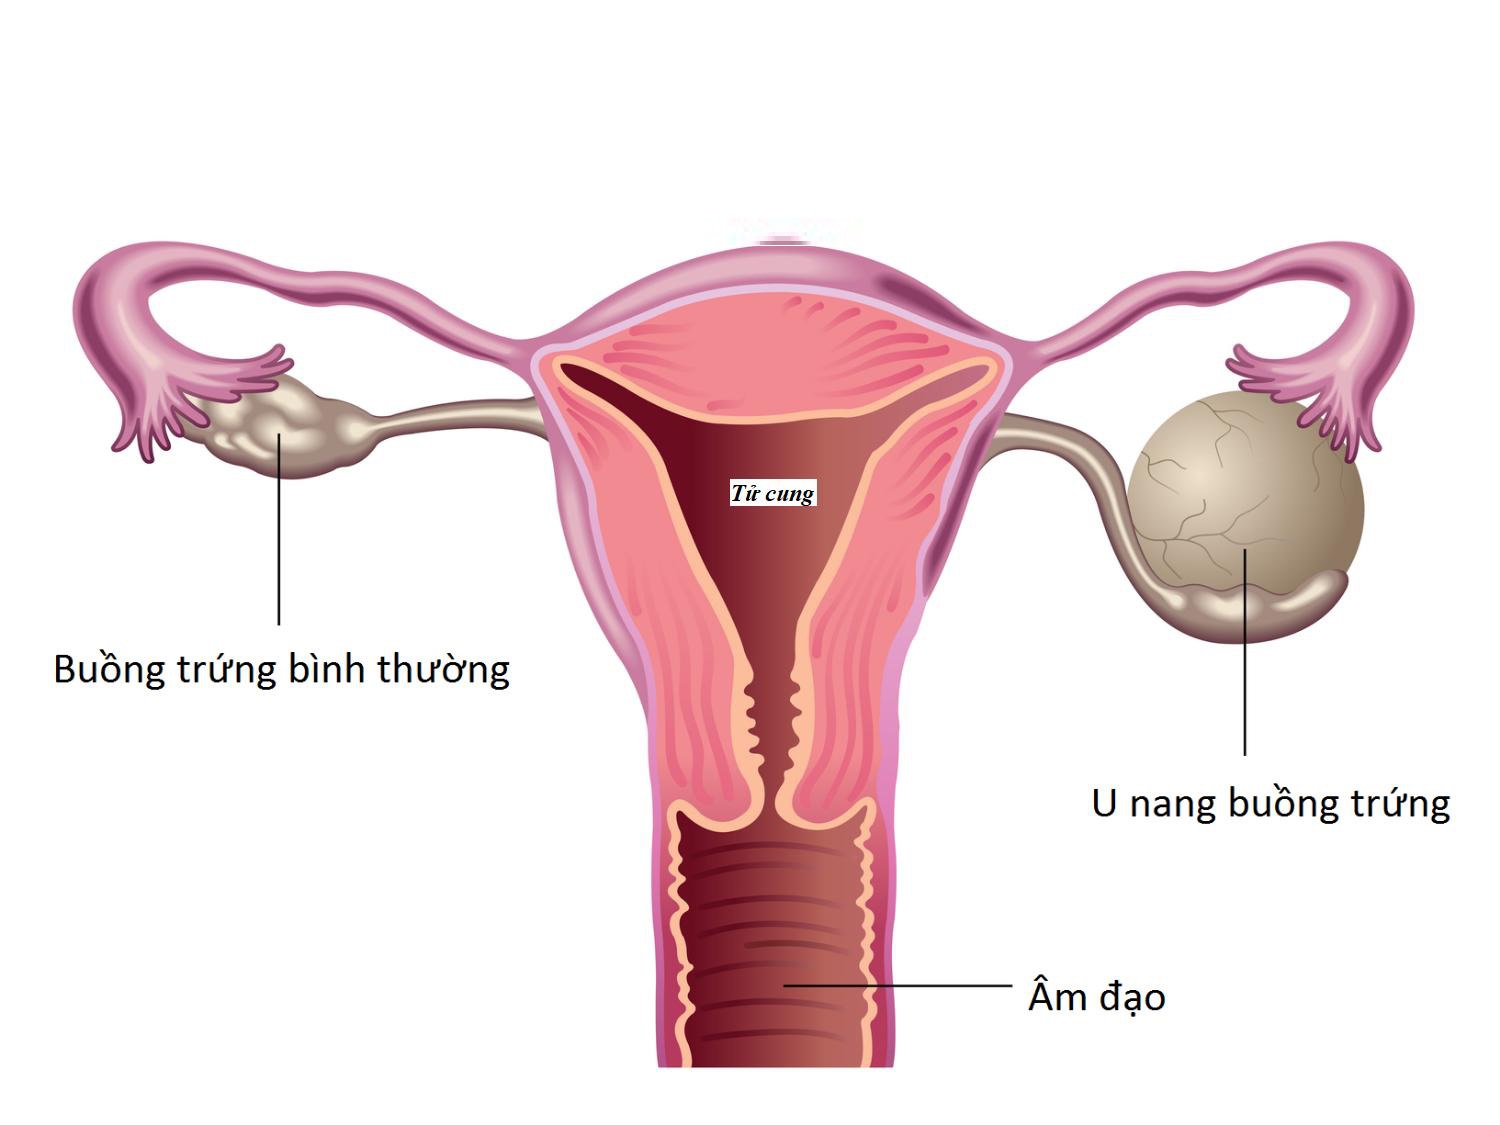 U nang buồng trứng là một tình trạng trong đó buồng trứng xuất hiện các khối u